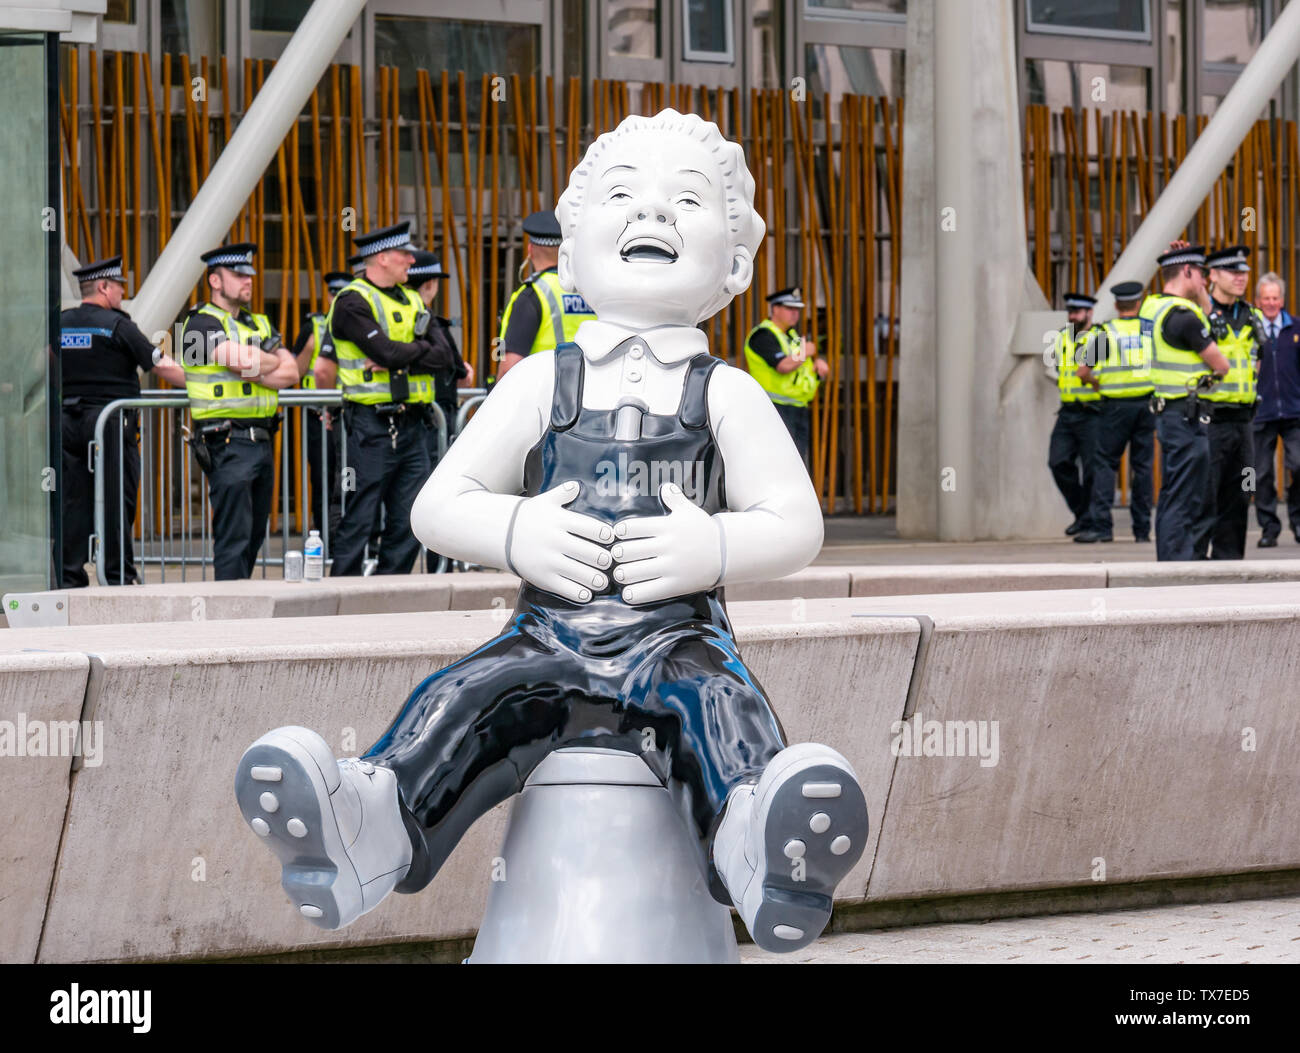 Oor Wullie grand seau Route de l'art de Peter Davidson, Pariament écossais au cours de protester avec la police, Holyrood, Édimbourg, Écosse, Royaume-Uni Banque D'Images